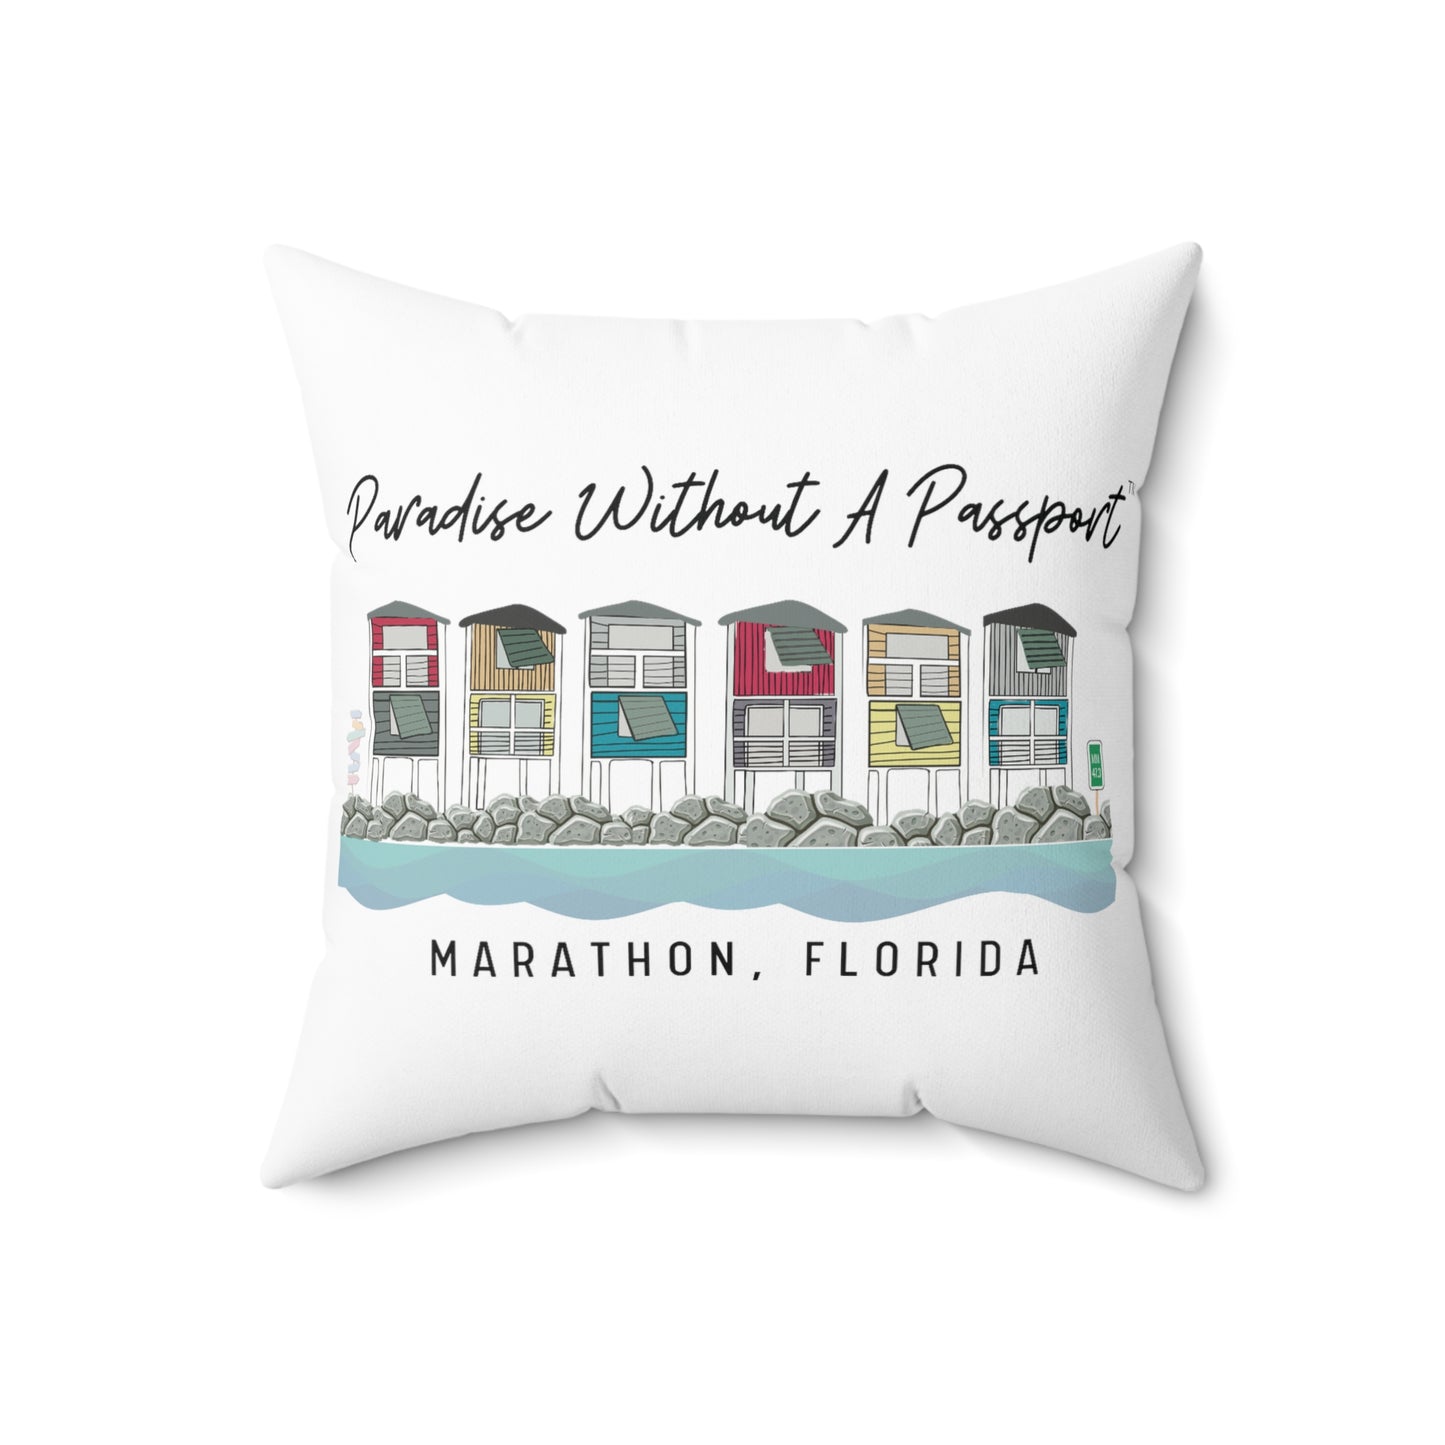 paradise without a passport - throw pillows - four sizes